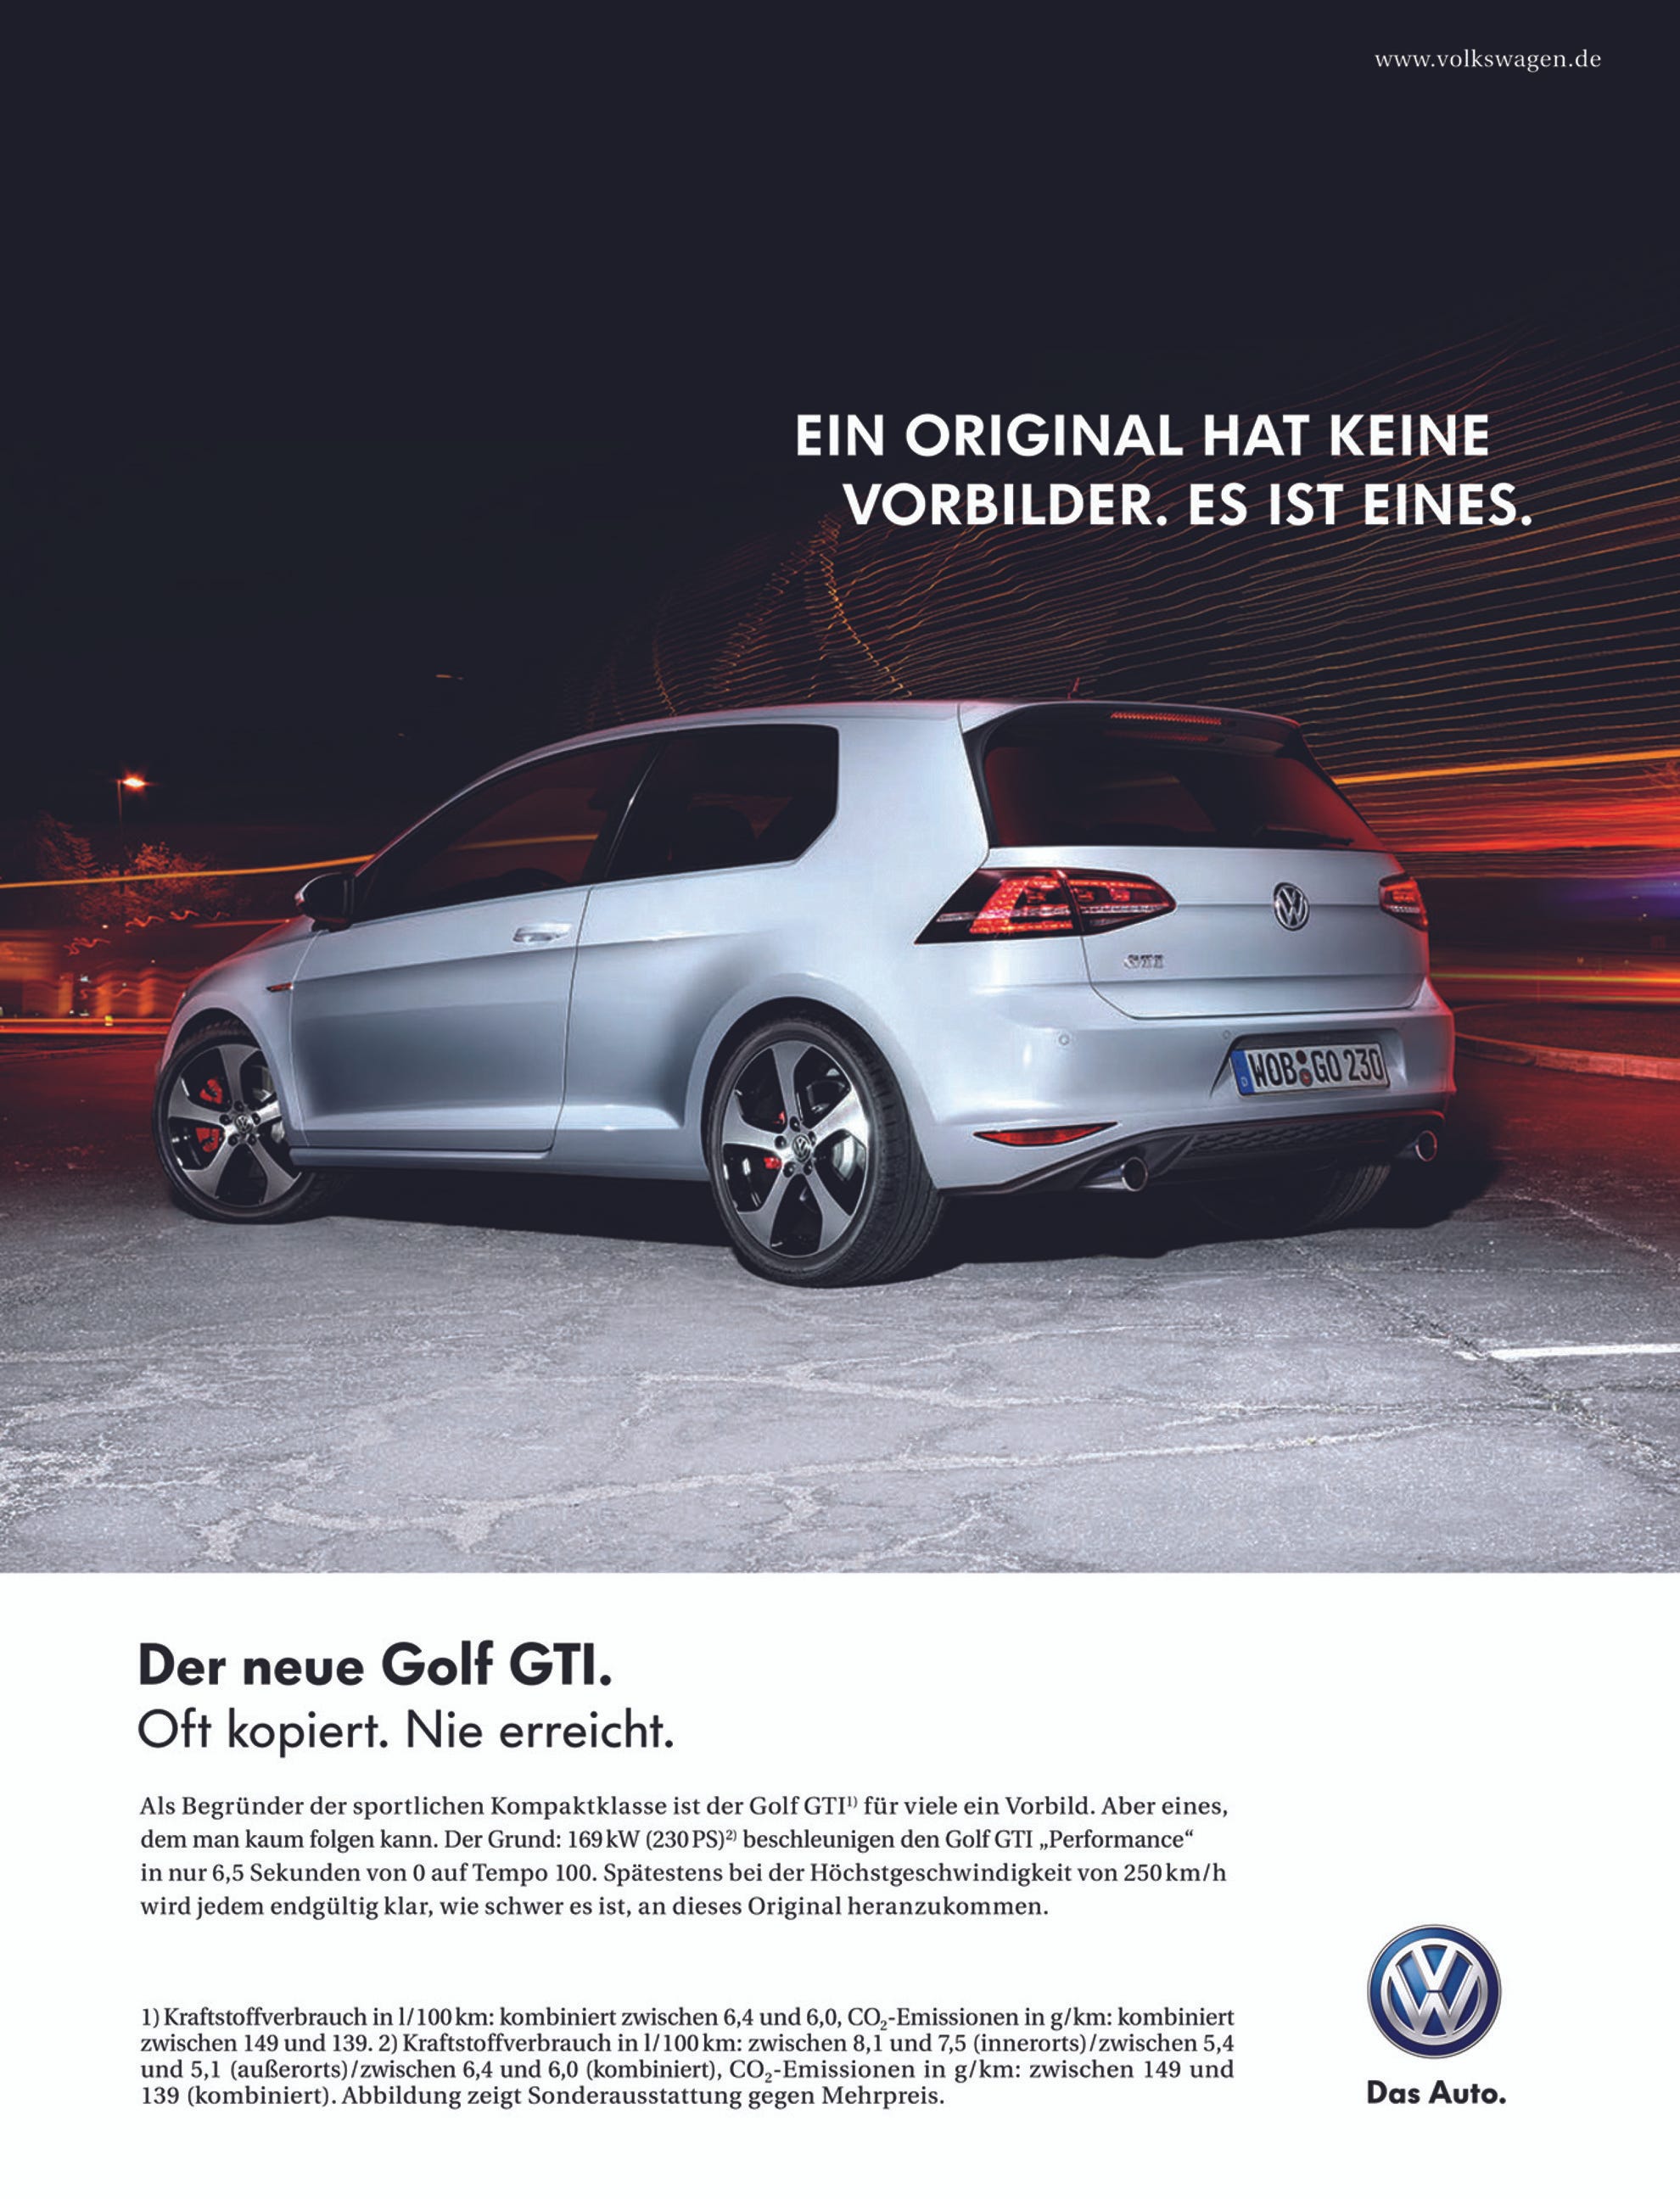 Anuncios de Volkswagen Golf GTI a lo largo de su historia | by Rafael Muñoz  | Medium